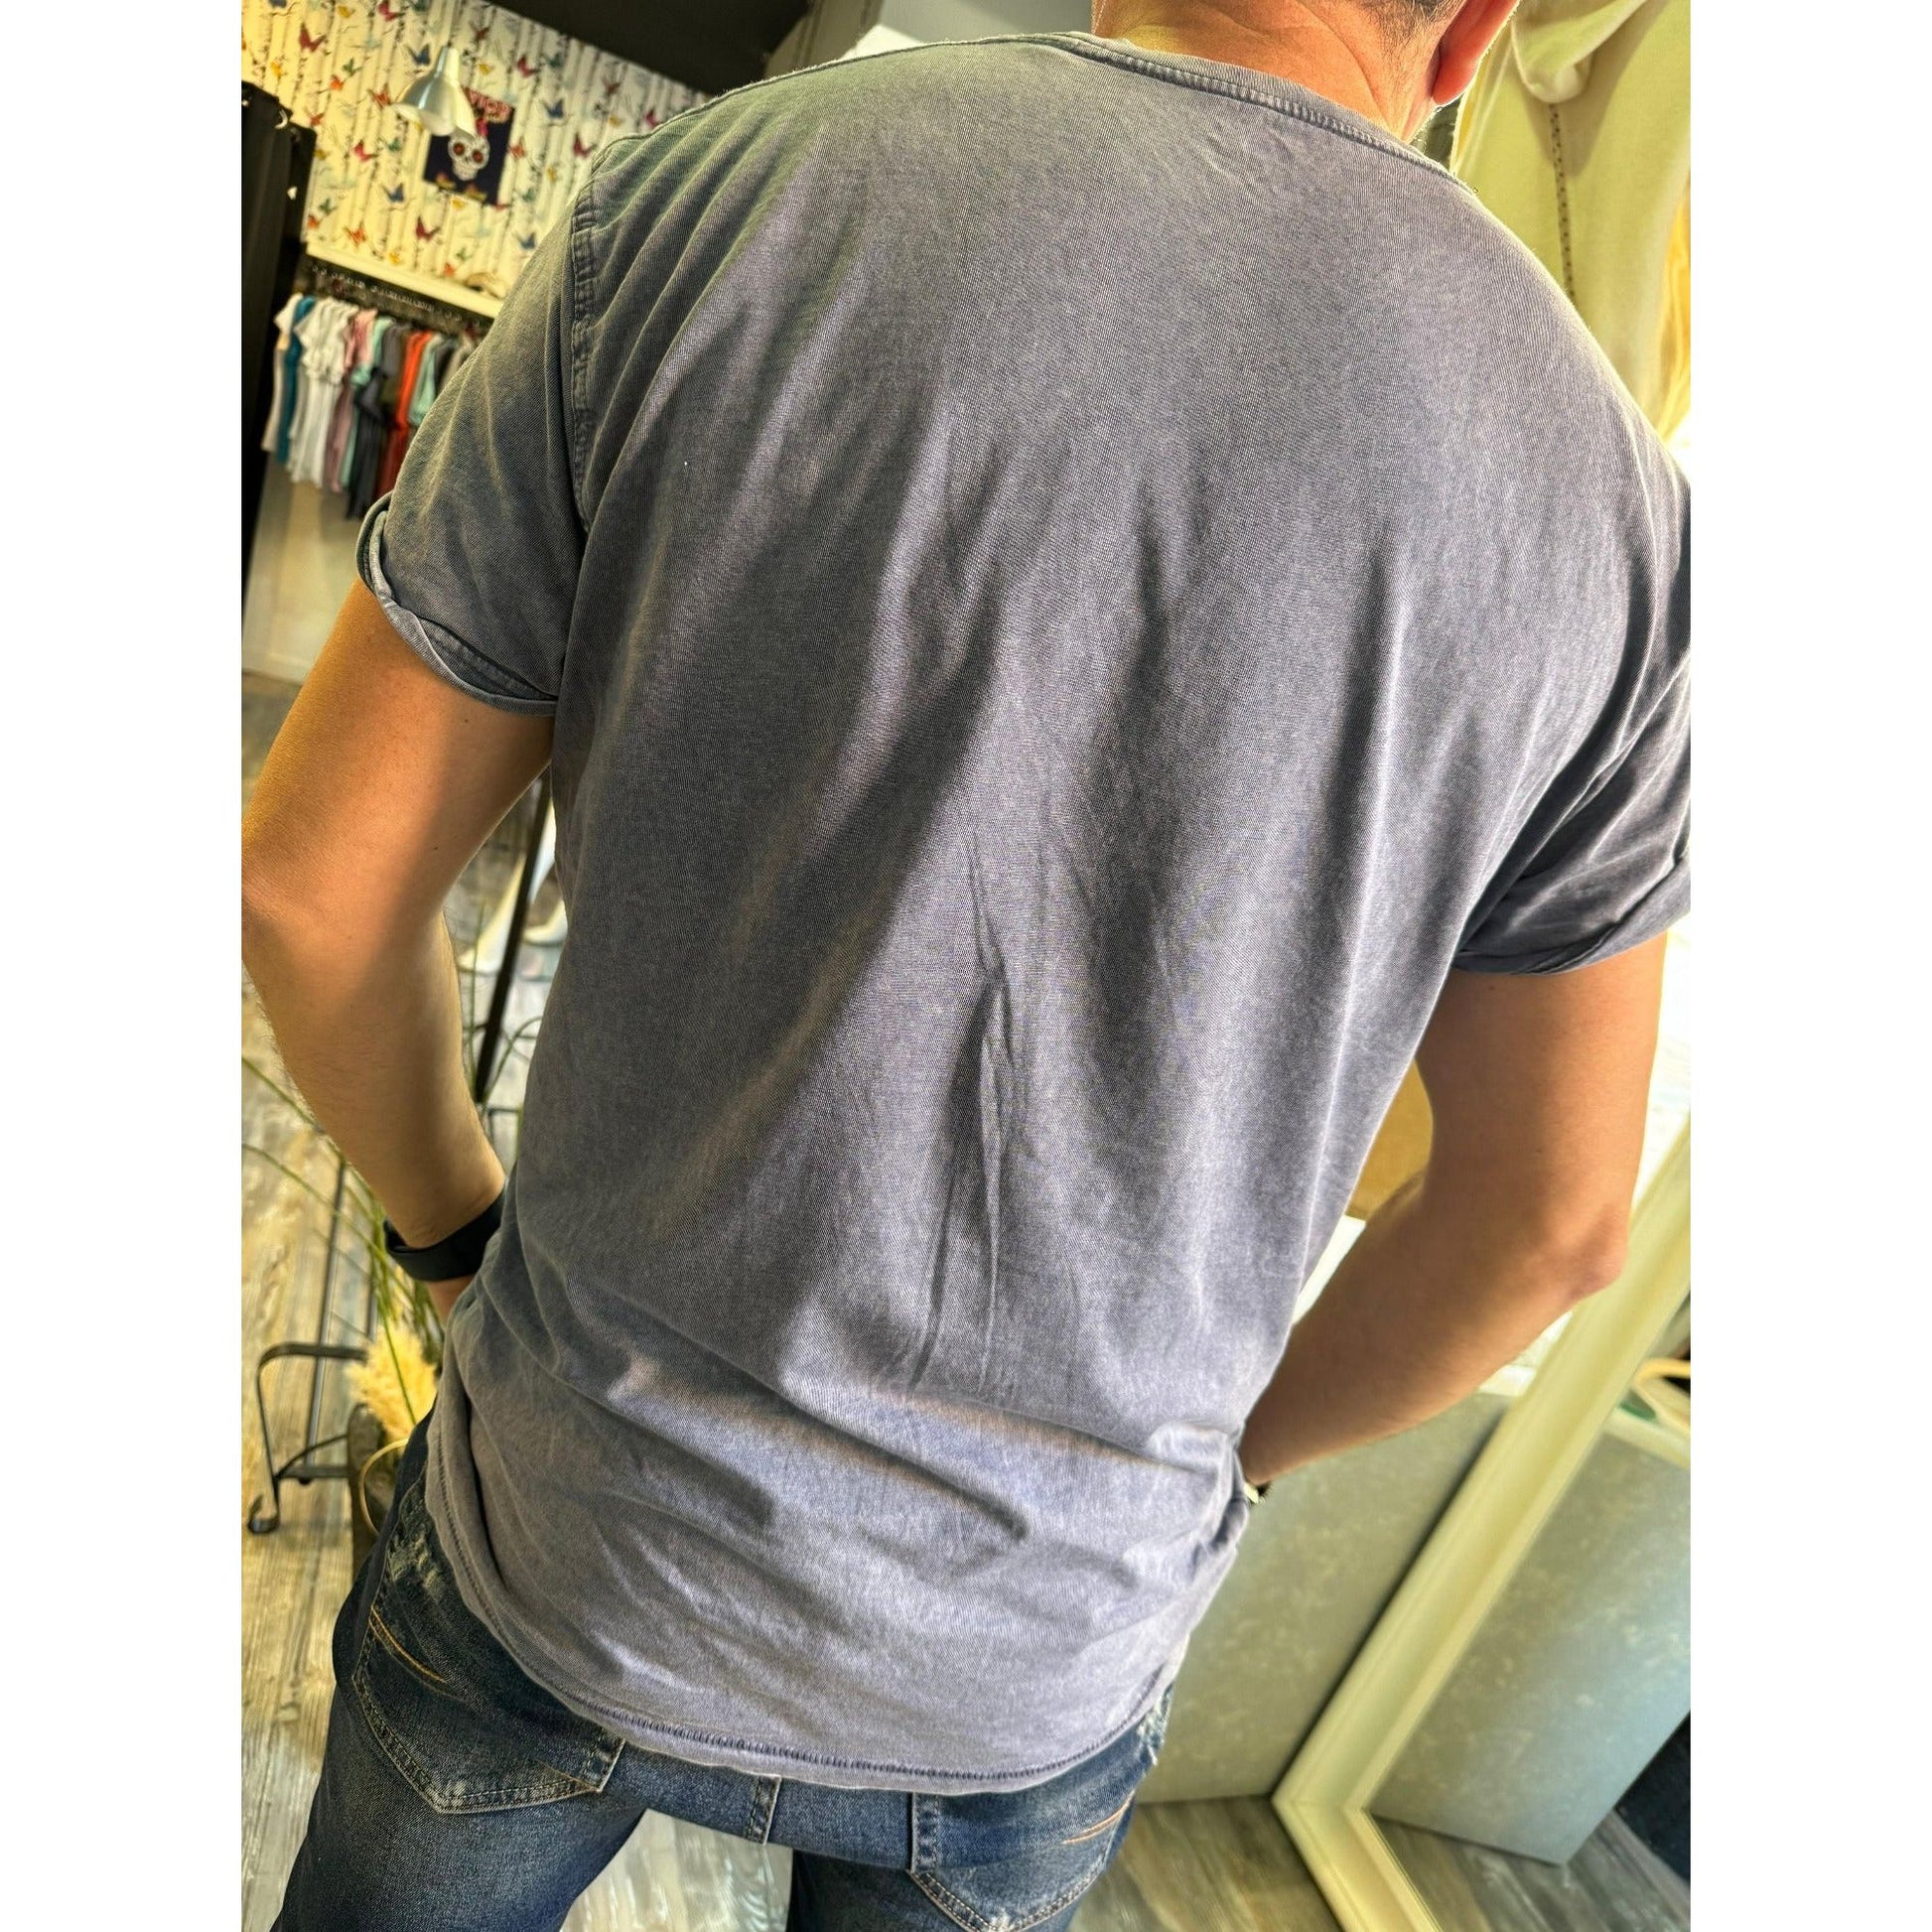 Camiseta azul jaspeado con Logo Laurel y Efecto Jeans para Hombre - Algodón de Alta Calidad | Savior.sf19